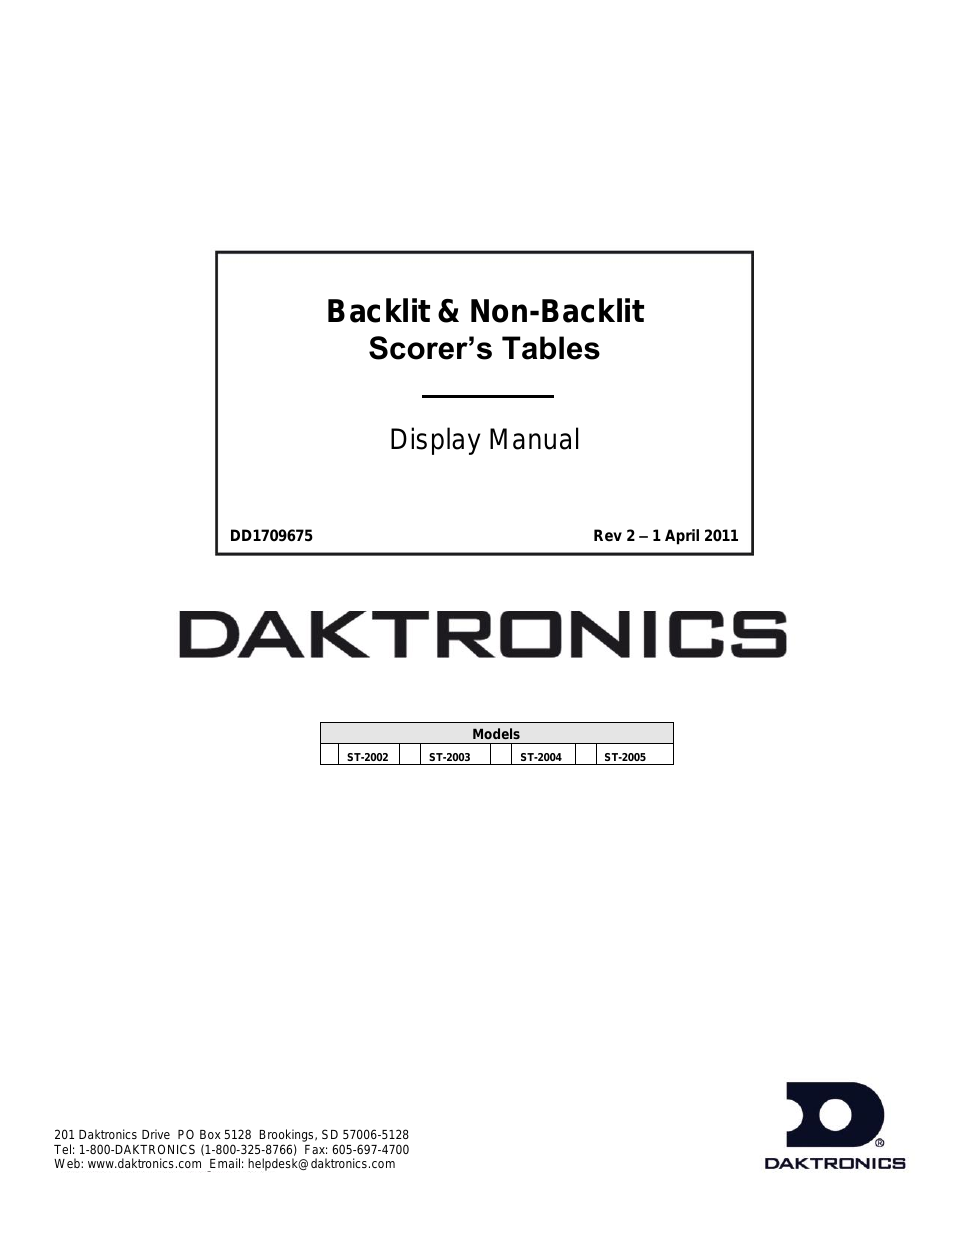 ST-2002 Backlit & Non-Backlit Scorer’s Tables